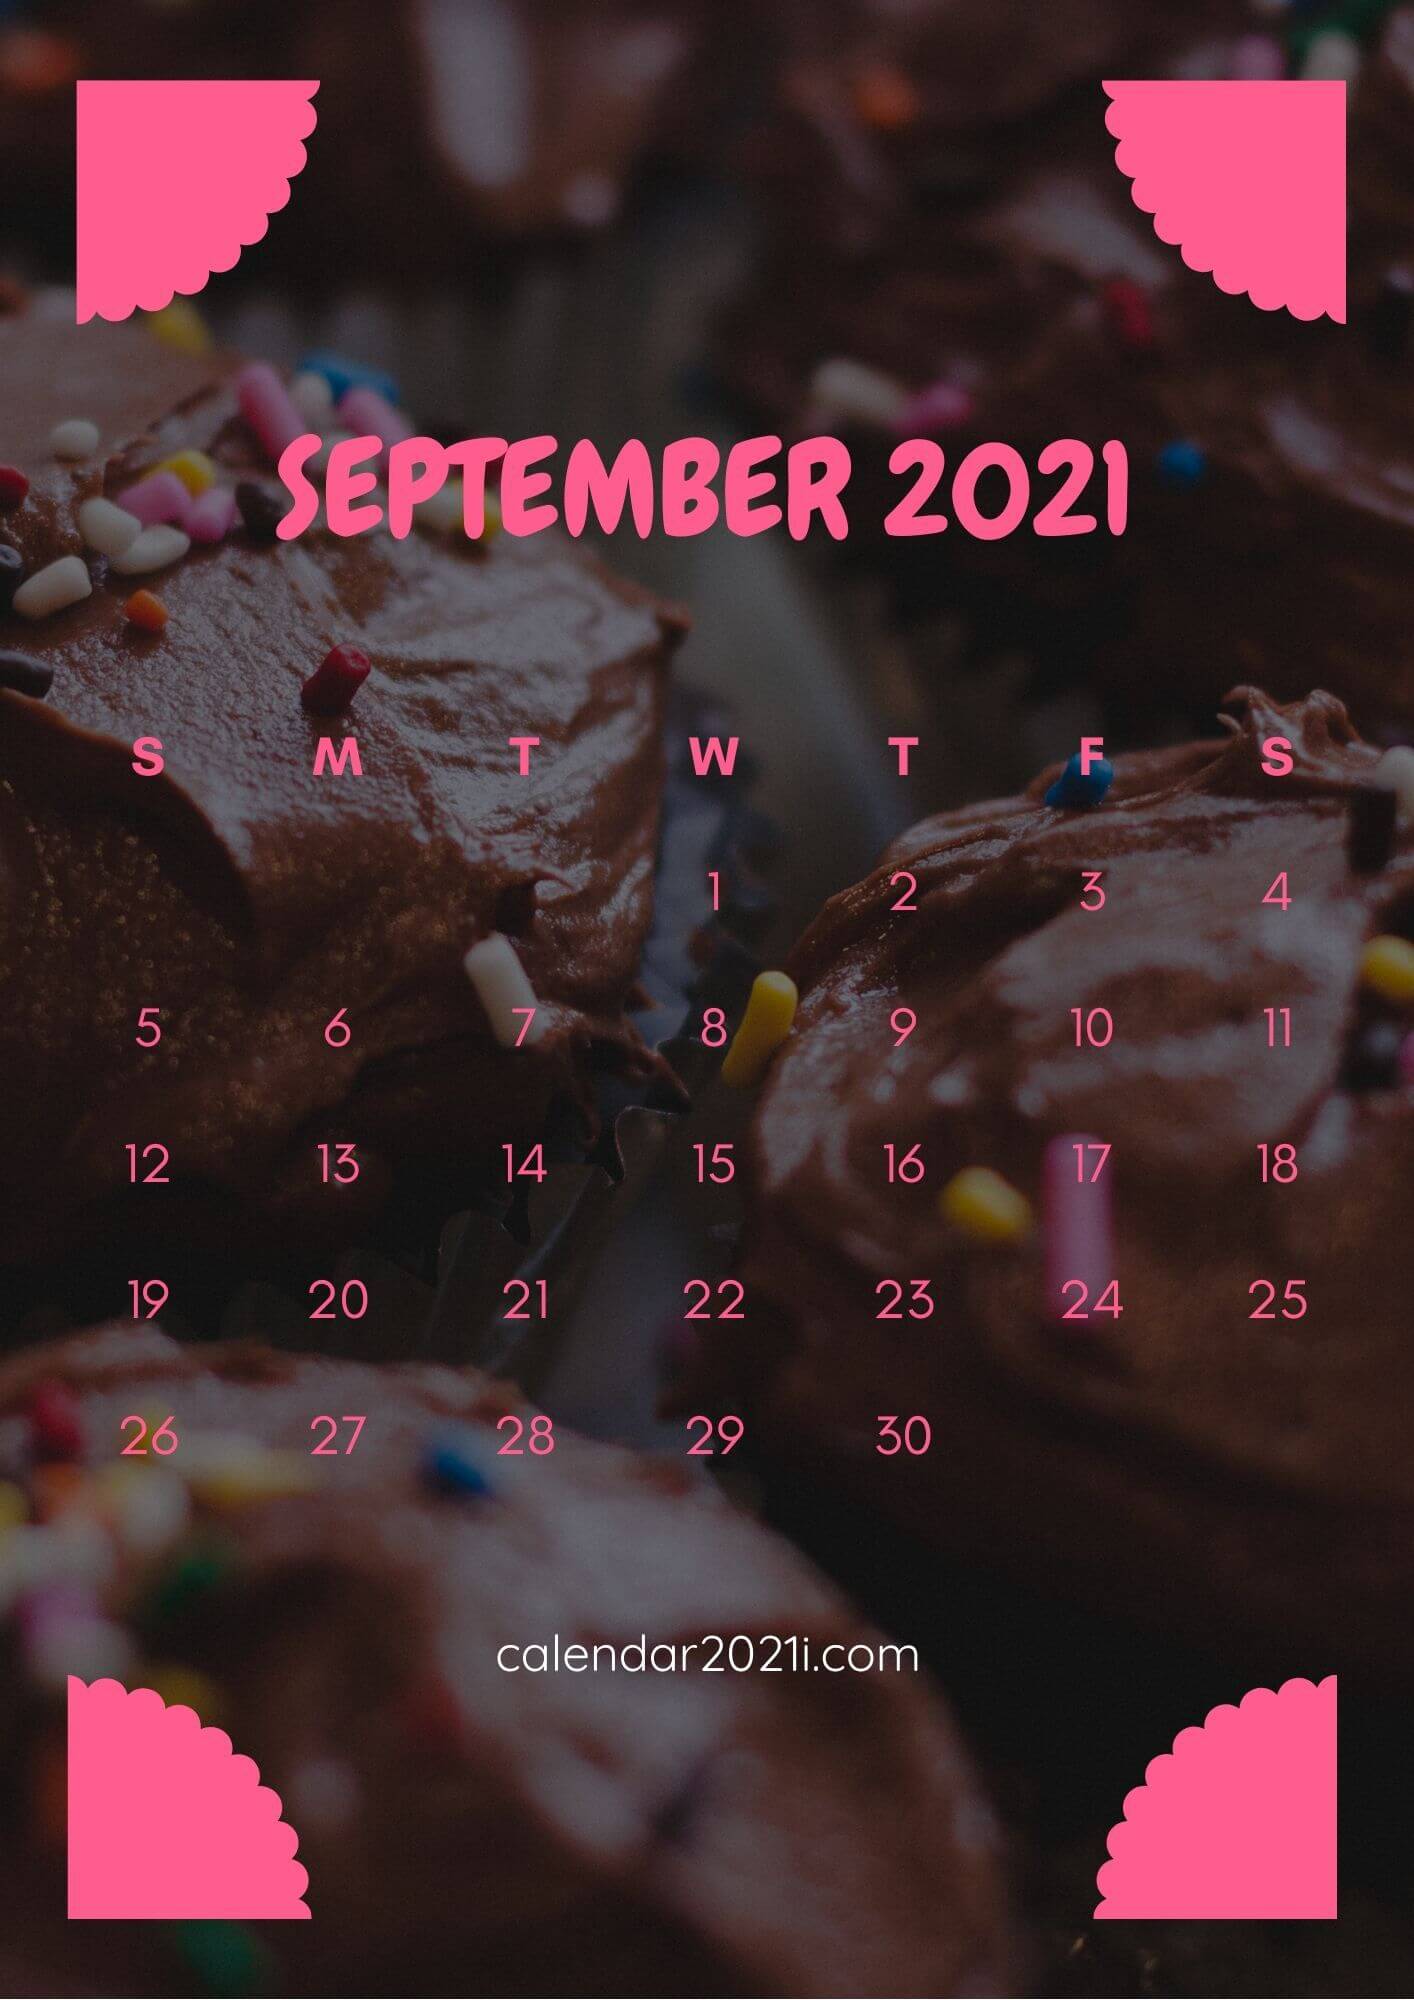 September 2021 Calendar Wallpaper for iPhone